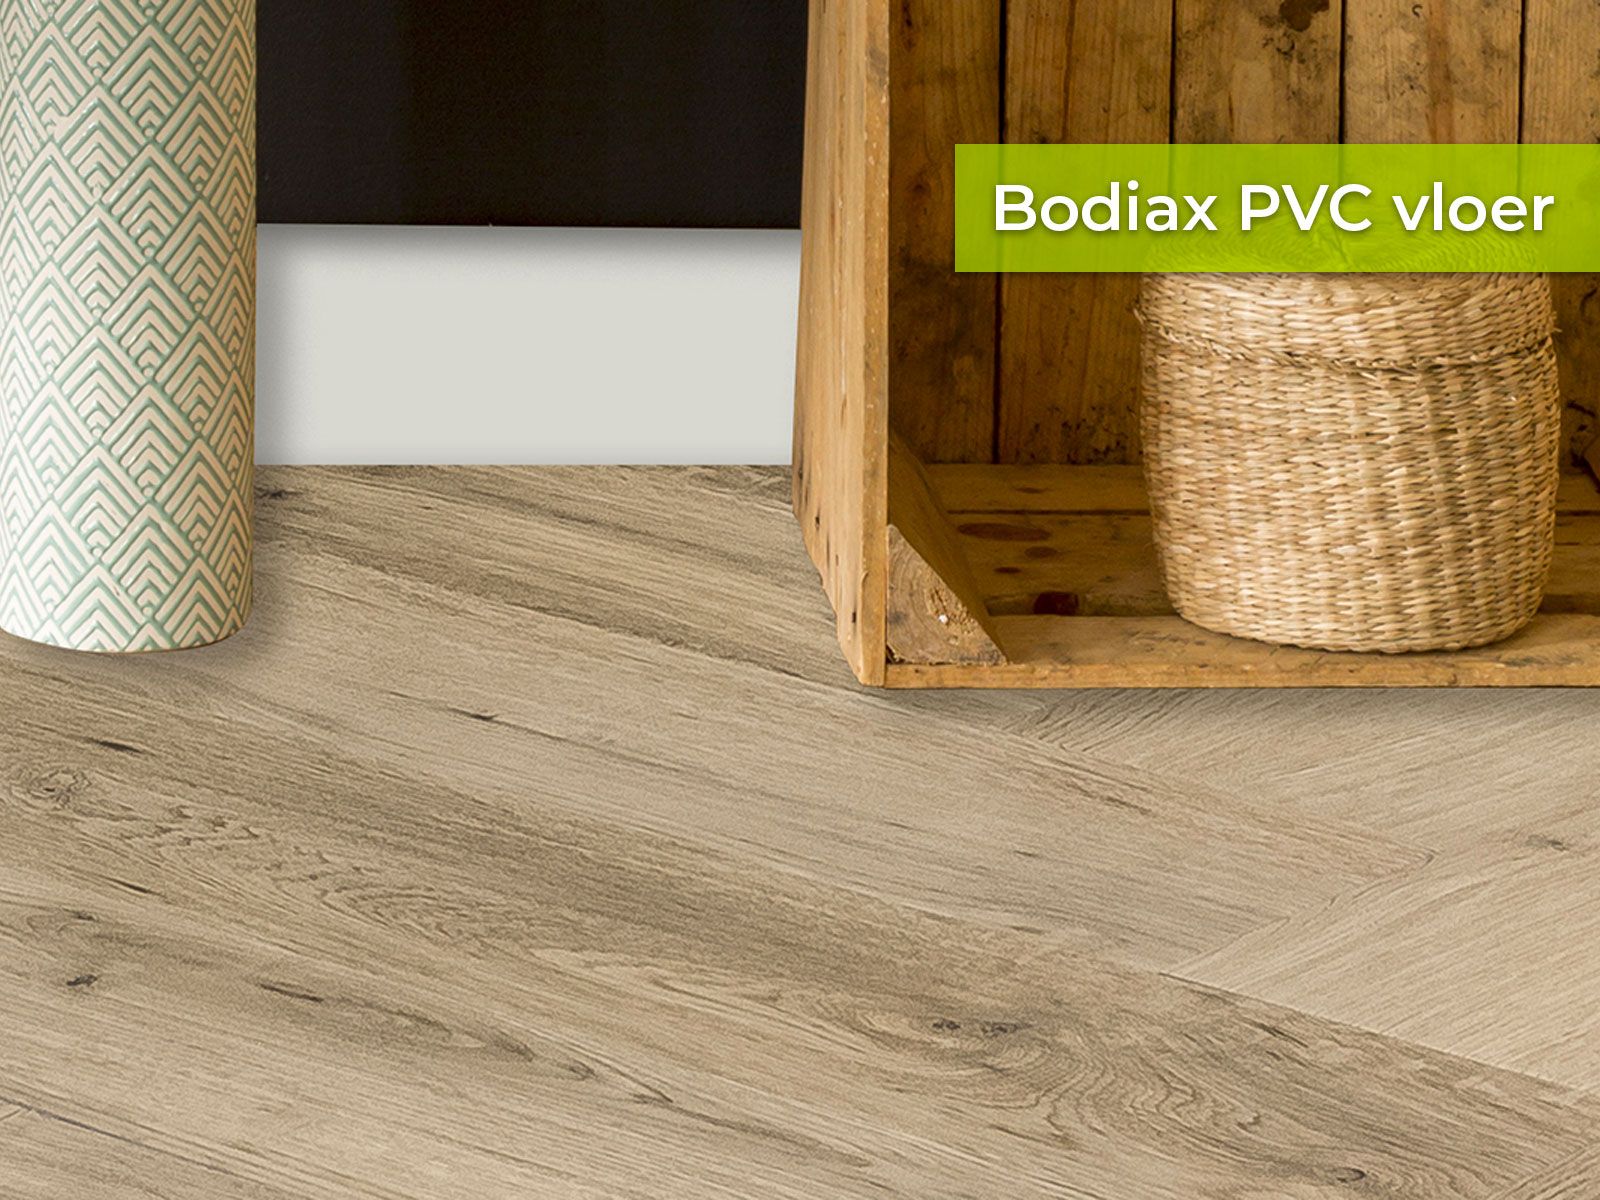 Bodiax PVC vloer